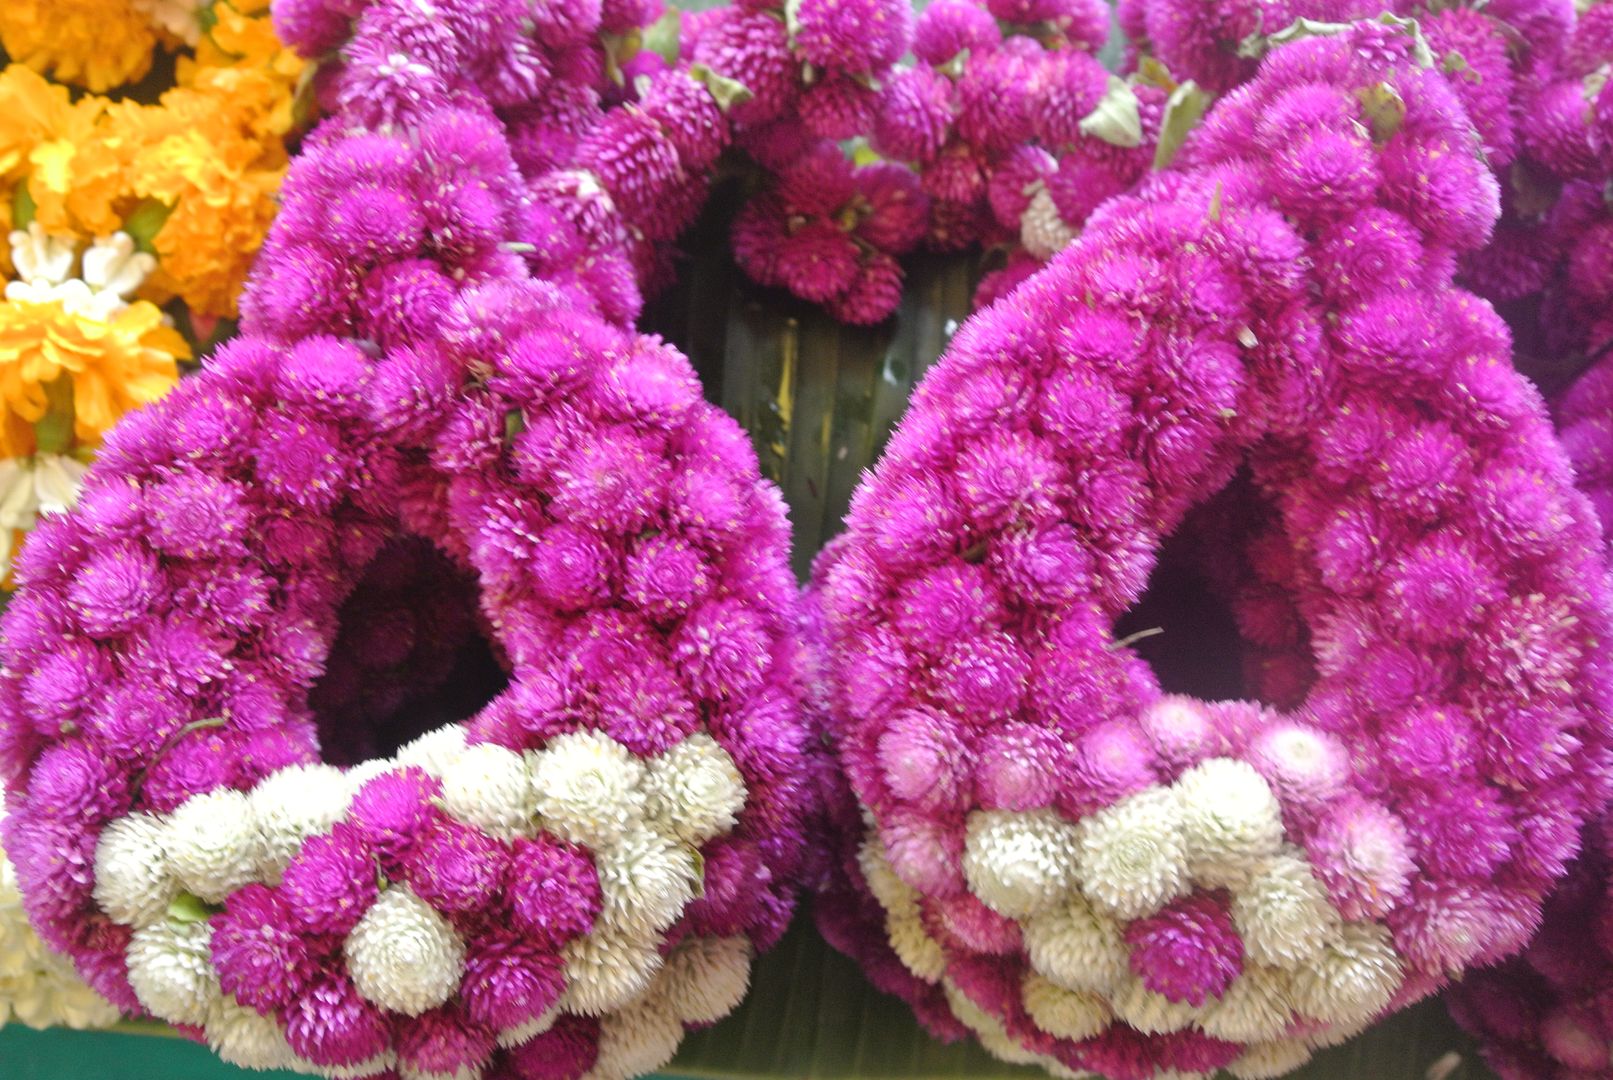 Bangkok. Le marché aux fleurs, Pak Klong Talat